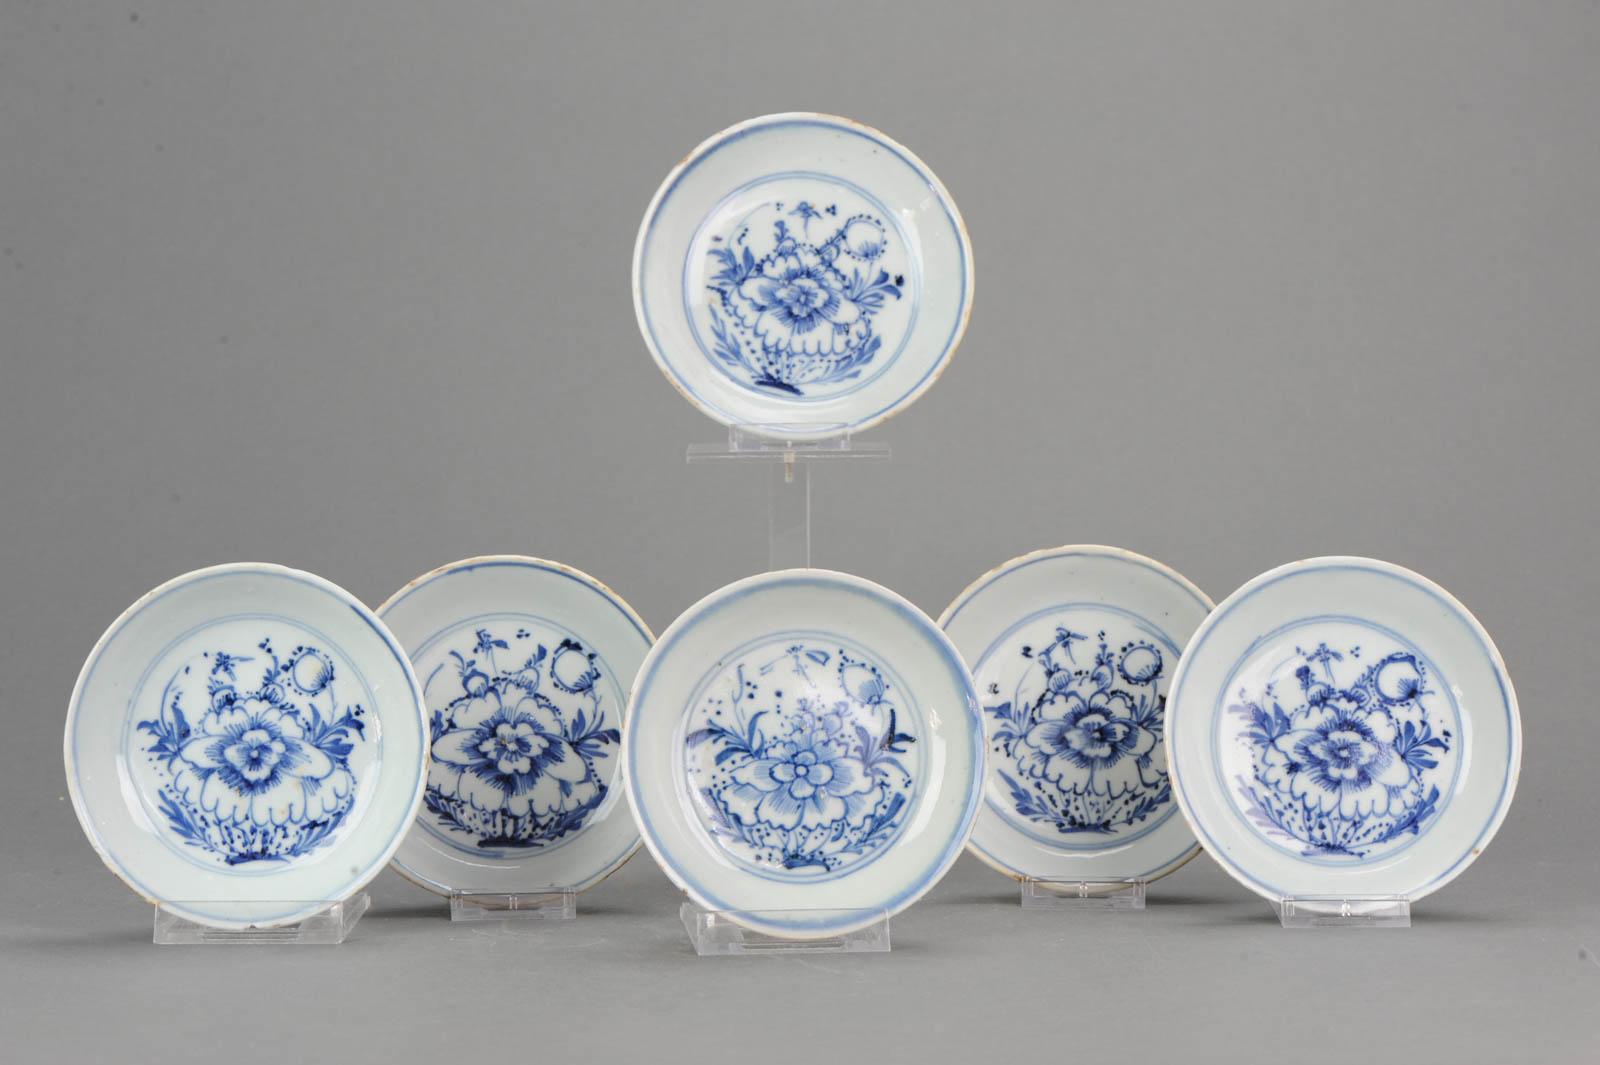 Un ensemble d'assiettes très joliment décorées datant d'environ 1620-1650. Avec boîte. Les plats sont joliment décorés de fleurs de pivoine

4-12-18-1-3
Condit
État général, 4 avec des fritures sur le bord seulement, 1 avec un éclat, une ligne